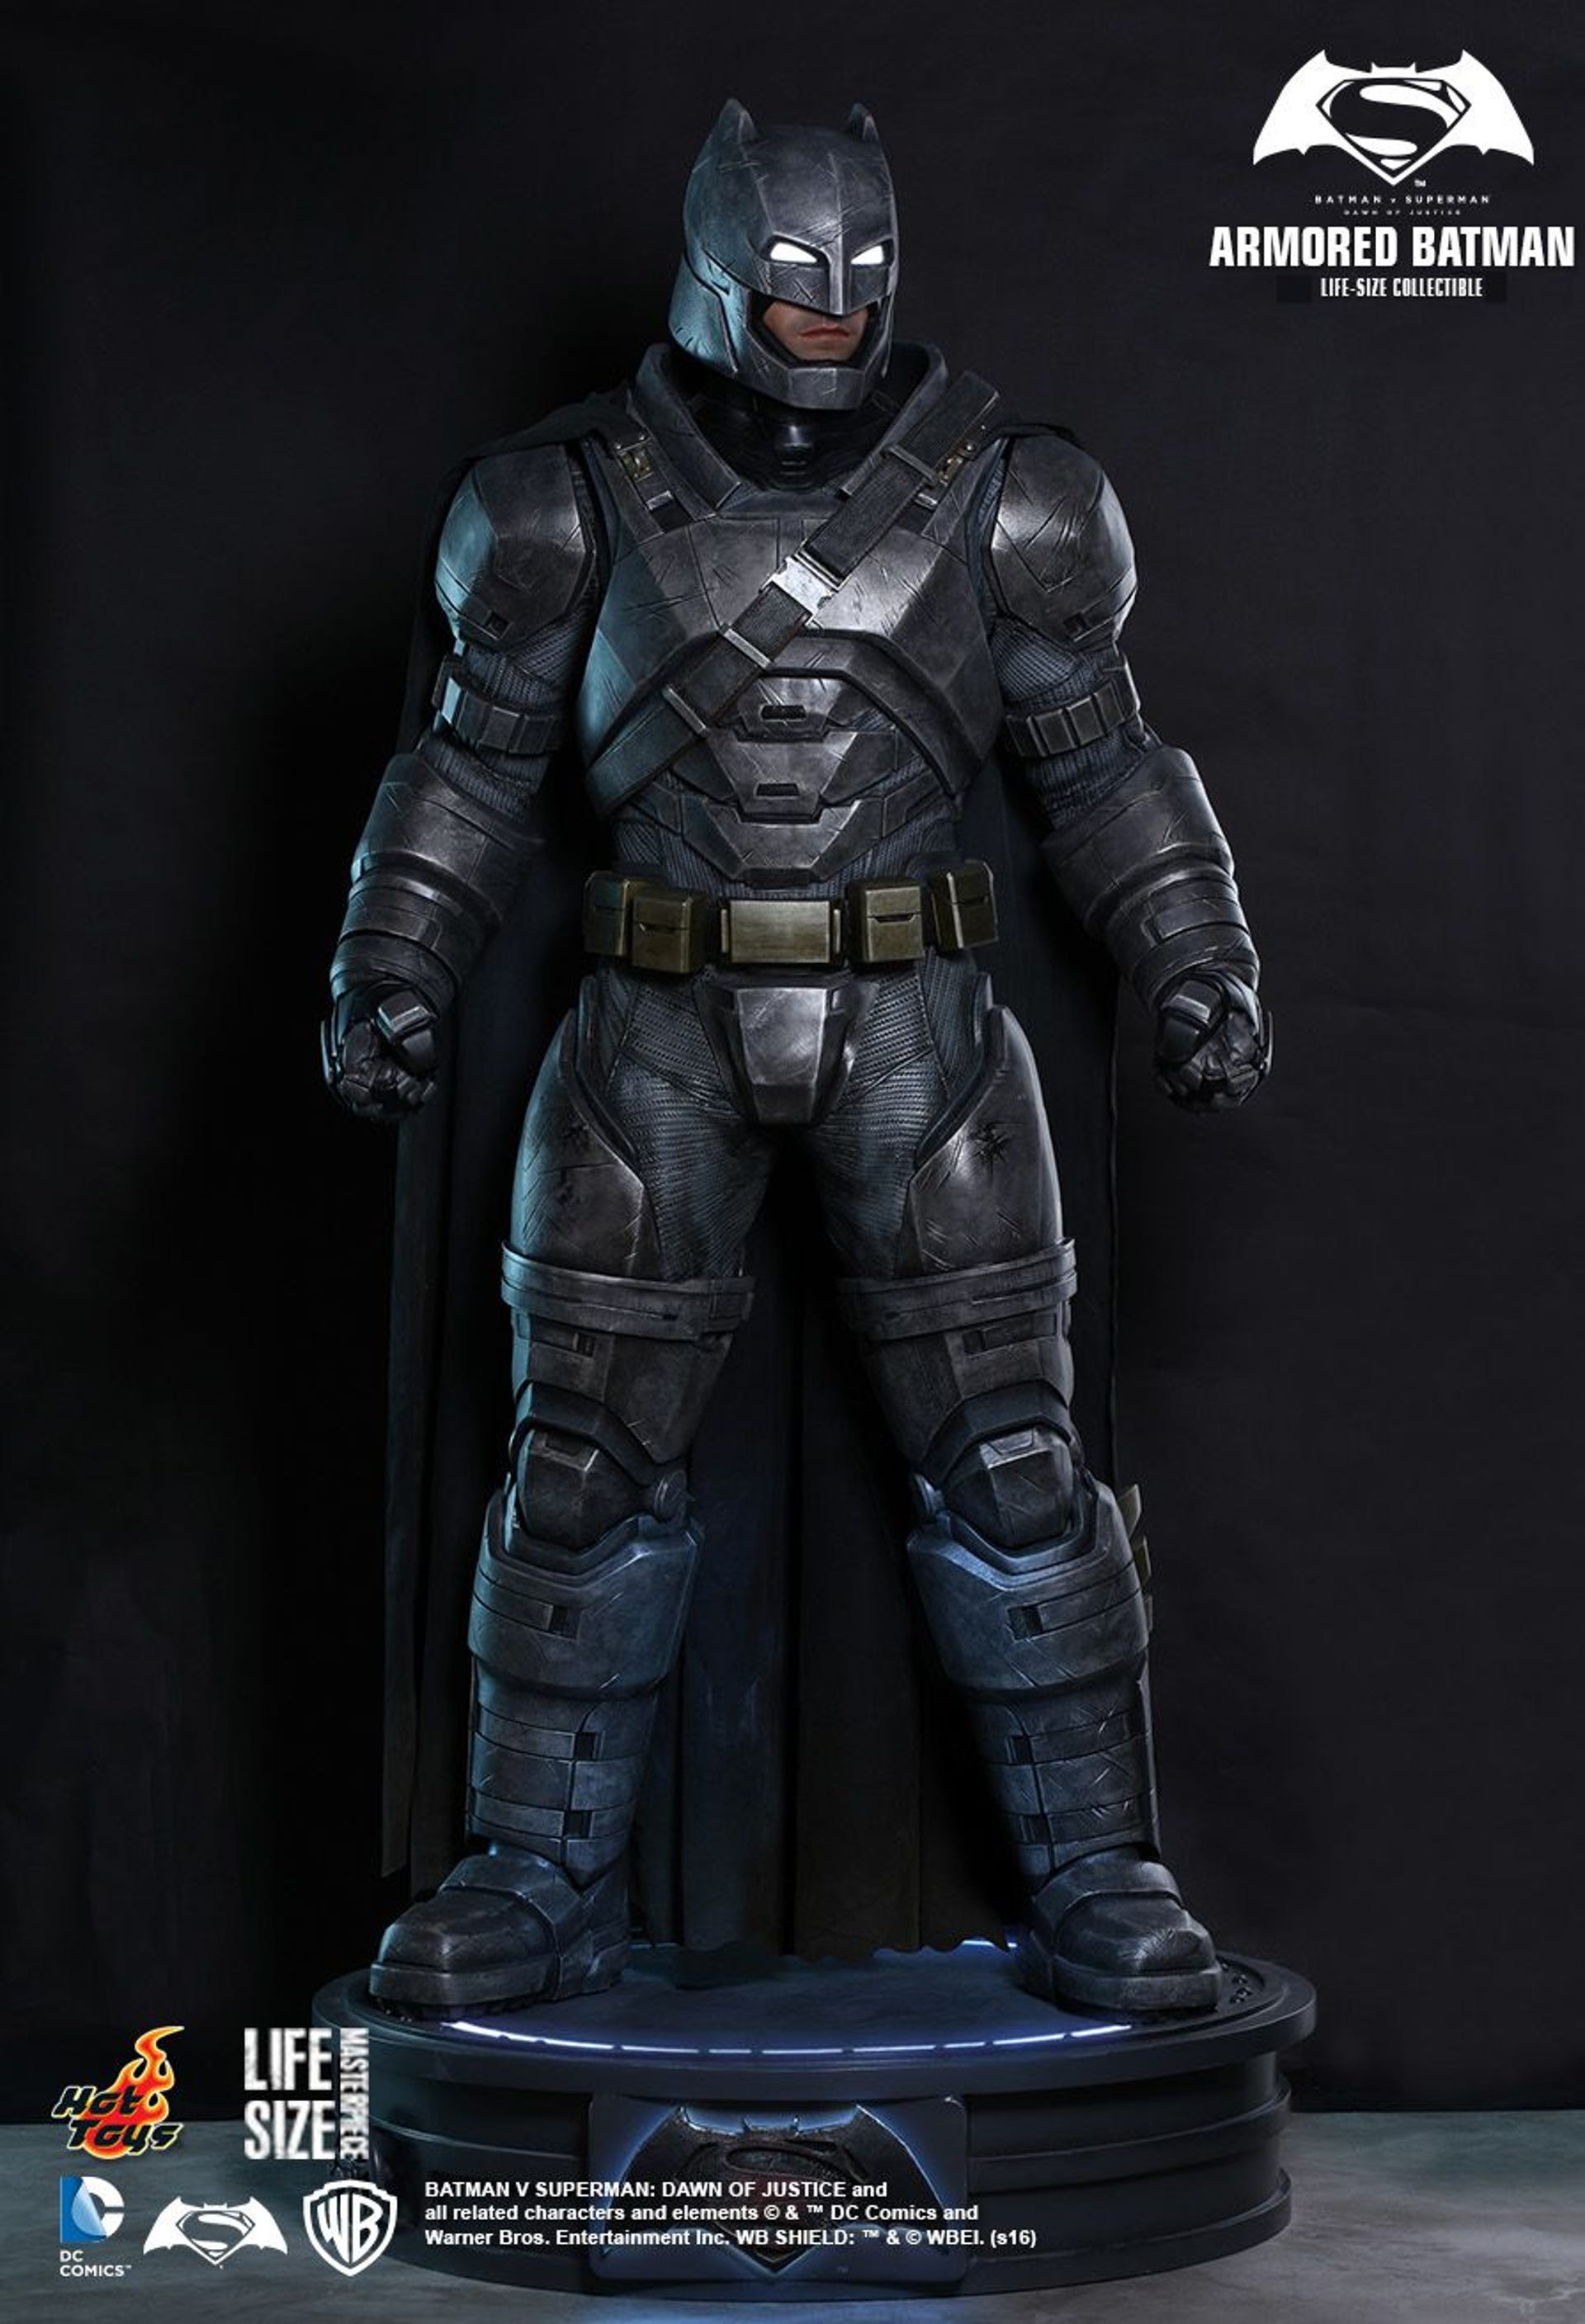 Life-size Batman